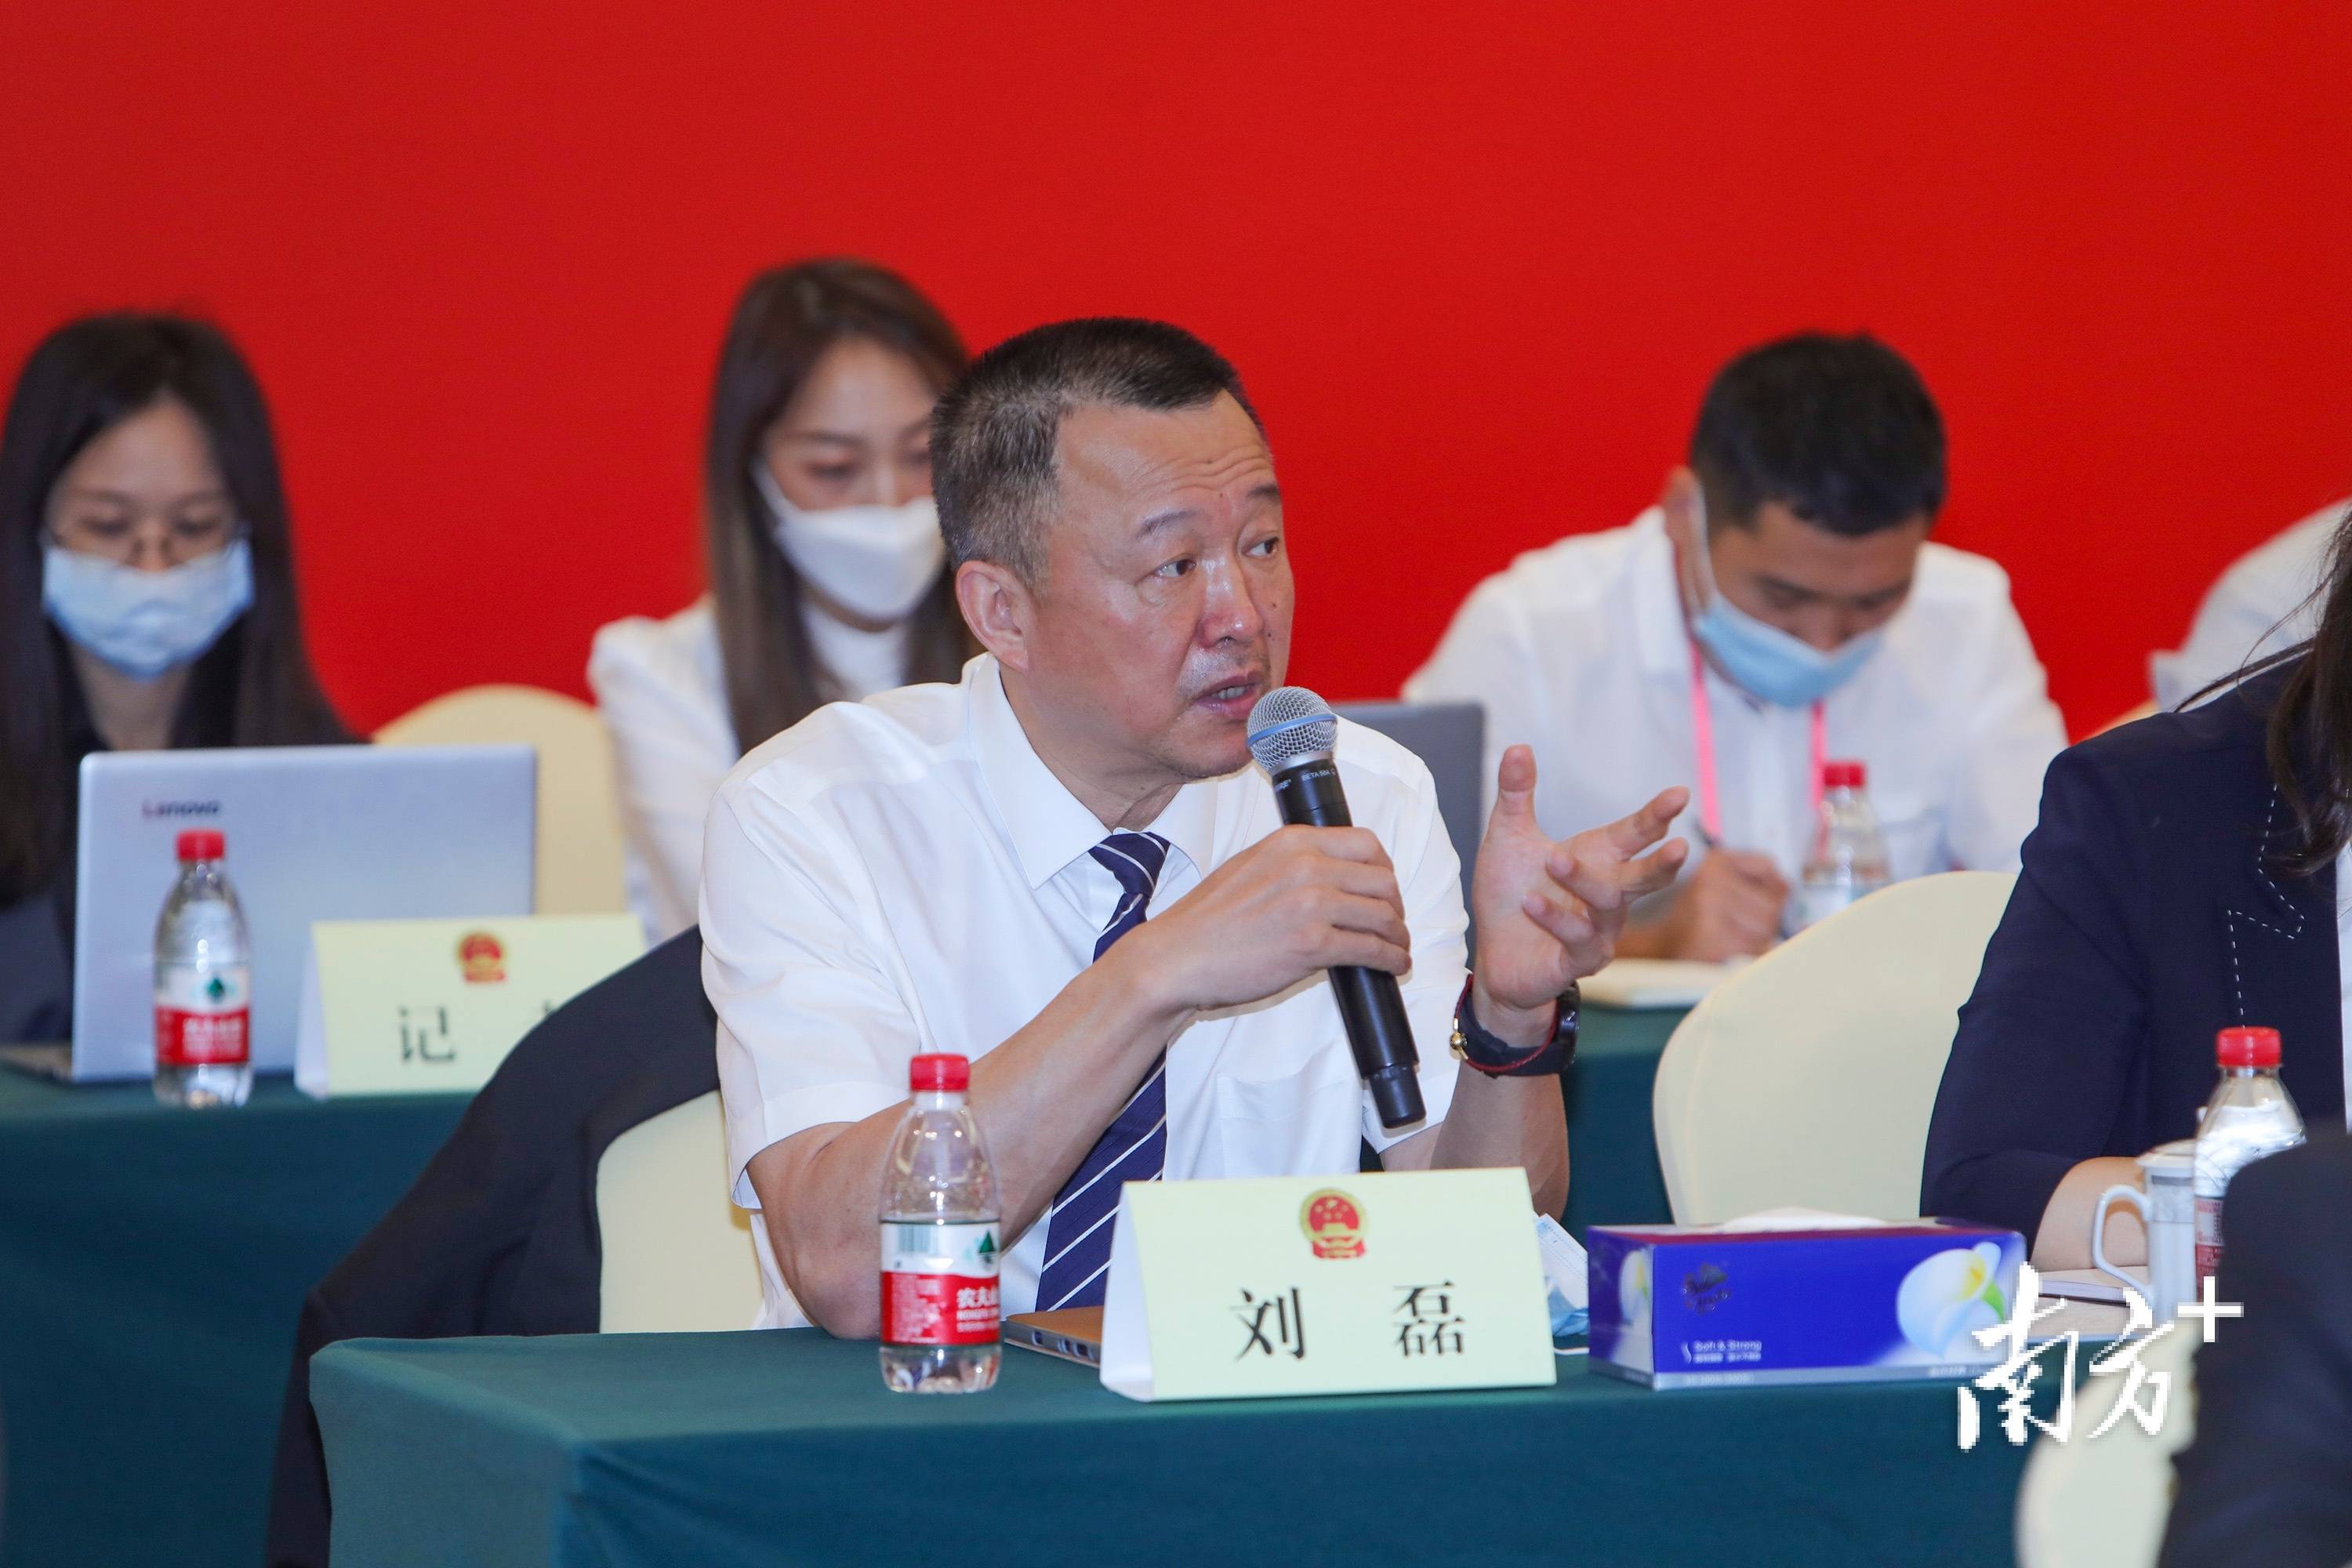 代表说刘磊建议打造国际领先的深圳结核病创新研究基地